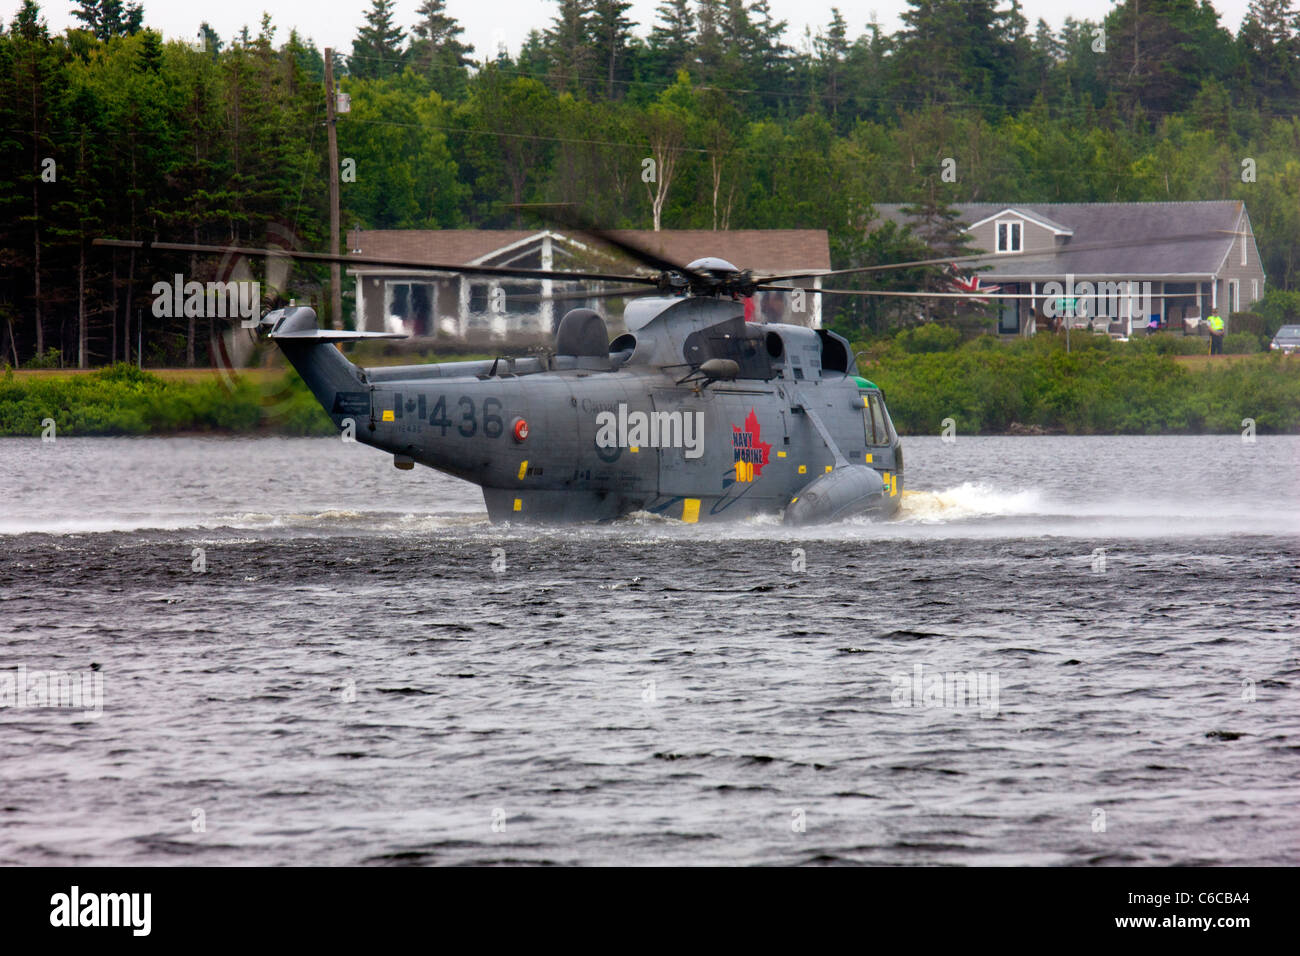 Ein speziell angepasste Sea King Hubschrauber der Kanadier Marines gibt eine Wasser-Vogelbeobachtung-Demonstration Landung auf Wasser Stockfoto